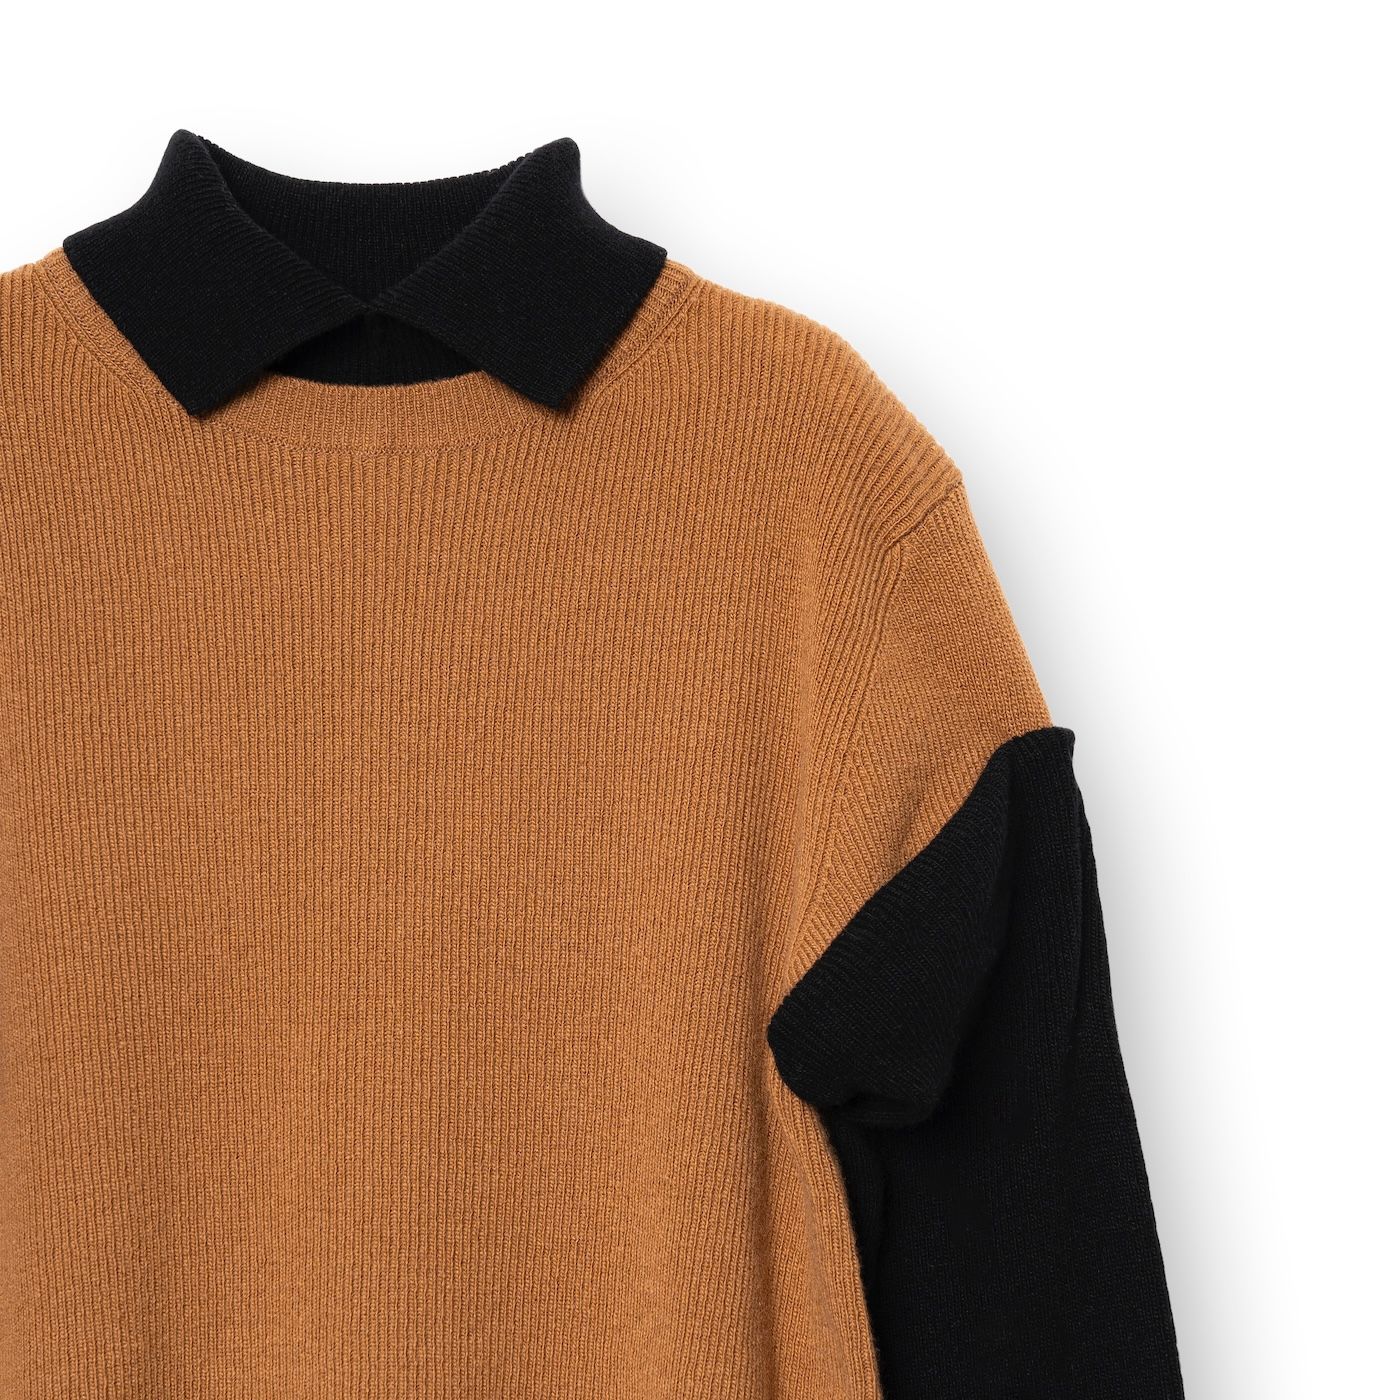 TAN - 【残り一点】Long Sleeves Sweater | ACRMTSM ONLINE STORE